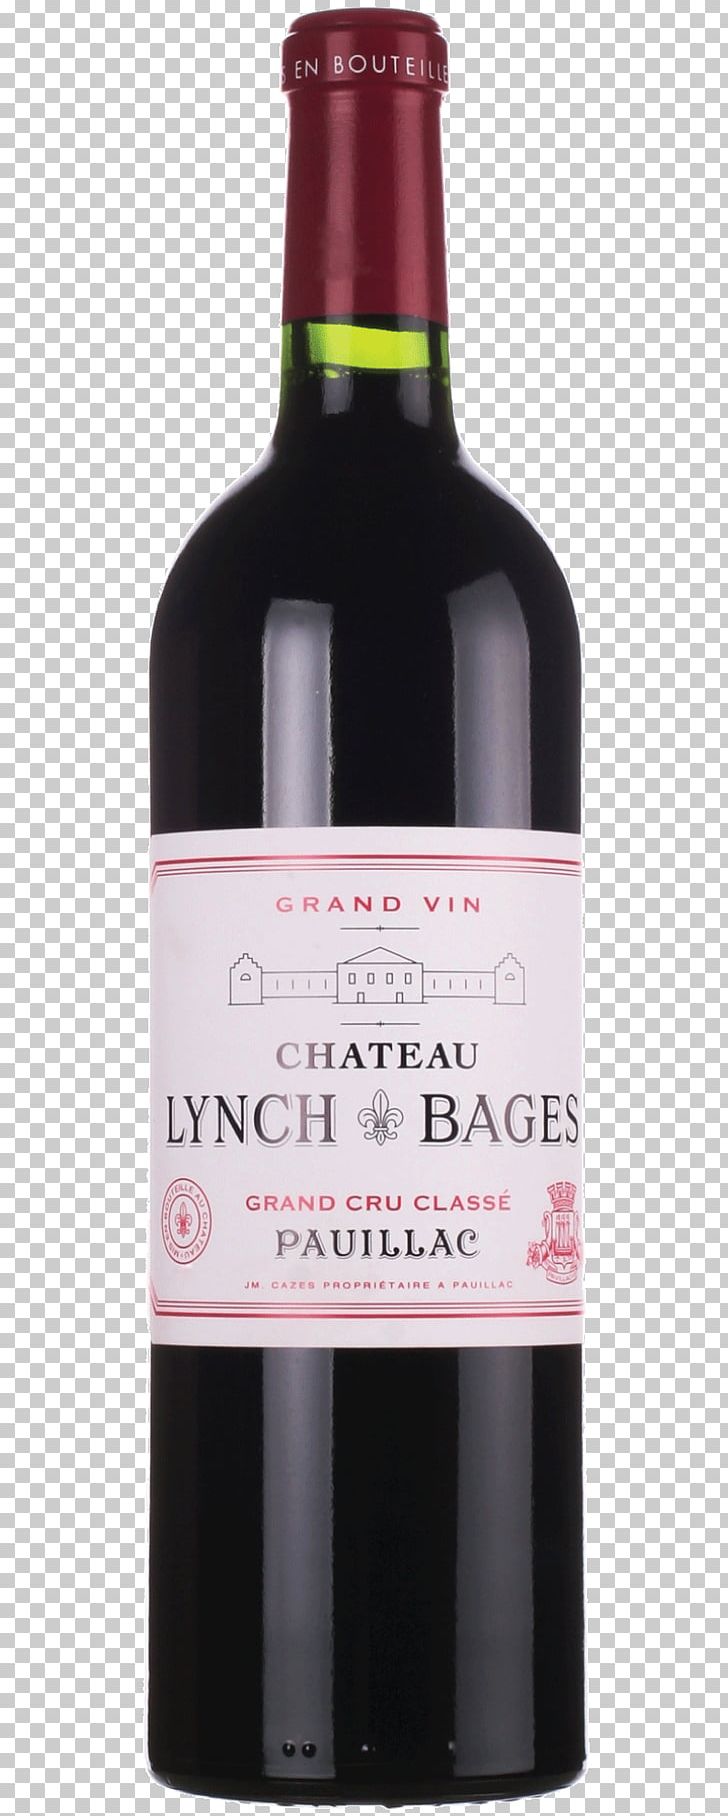 Château Lynch-Bages Wine Pauillac Château Beauregard Haut-Médoc AOC PNG, Clipart, Alcoholic Beverage, Bordeaux Wine, Bottle, Chateau, Cru Free PNG Download